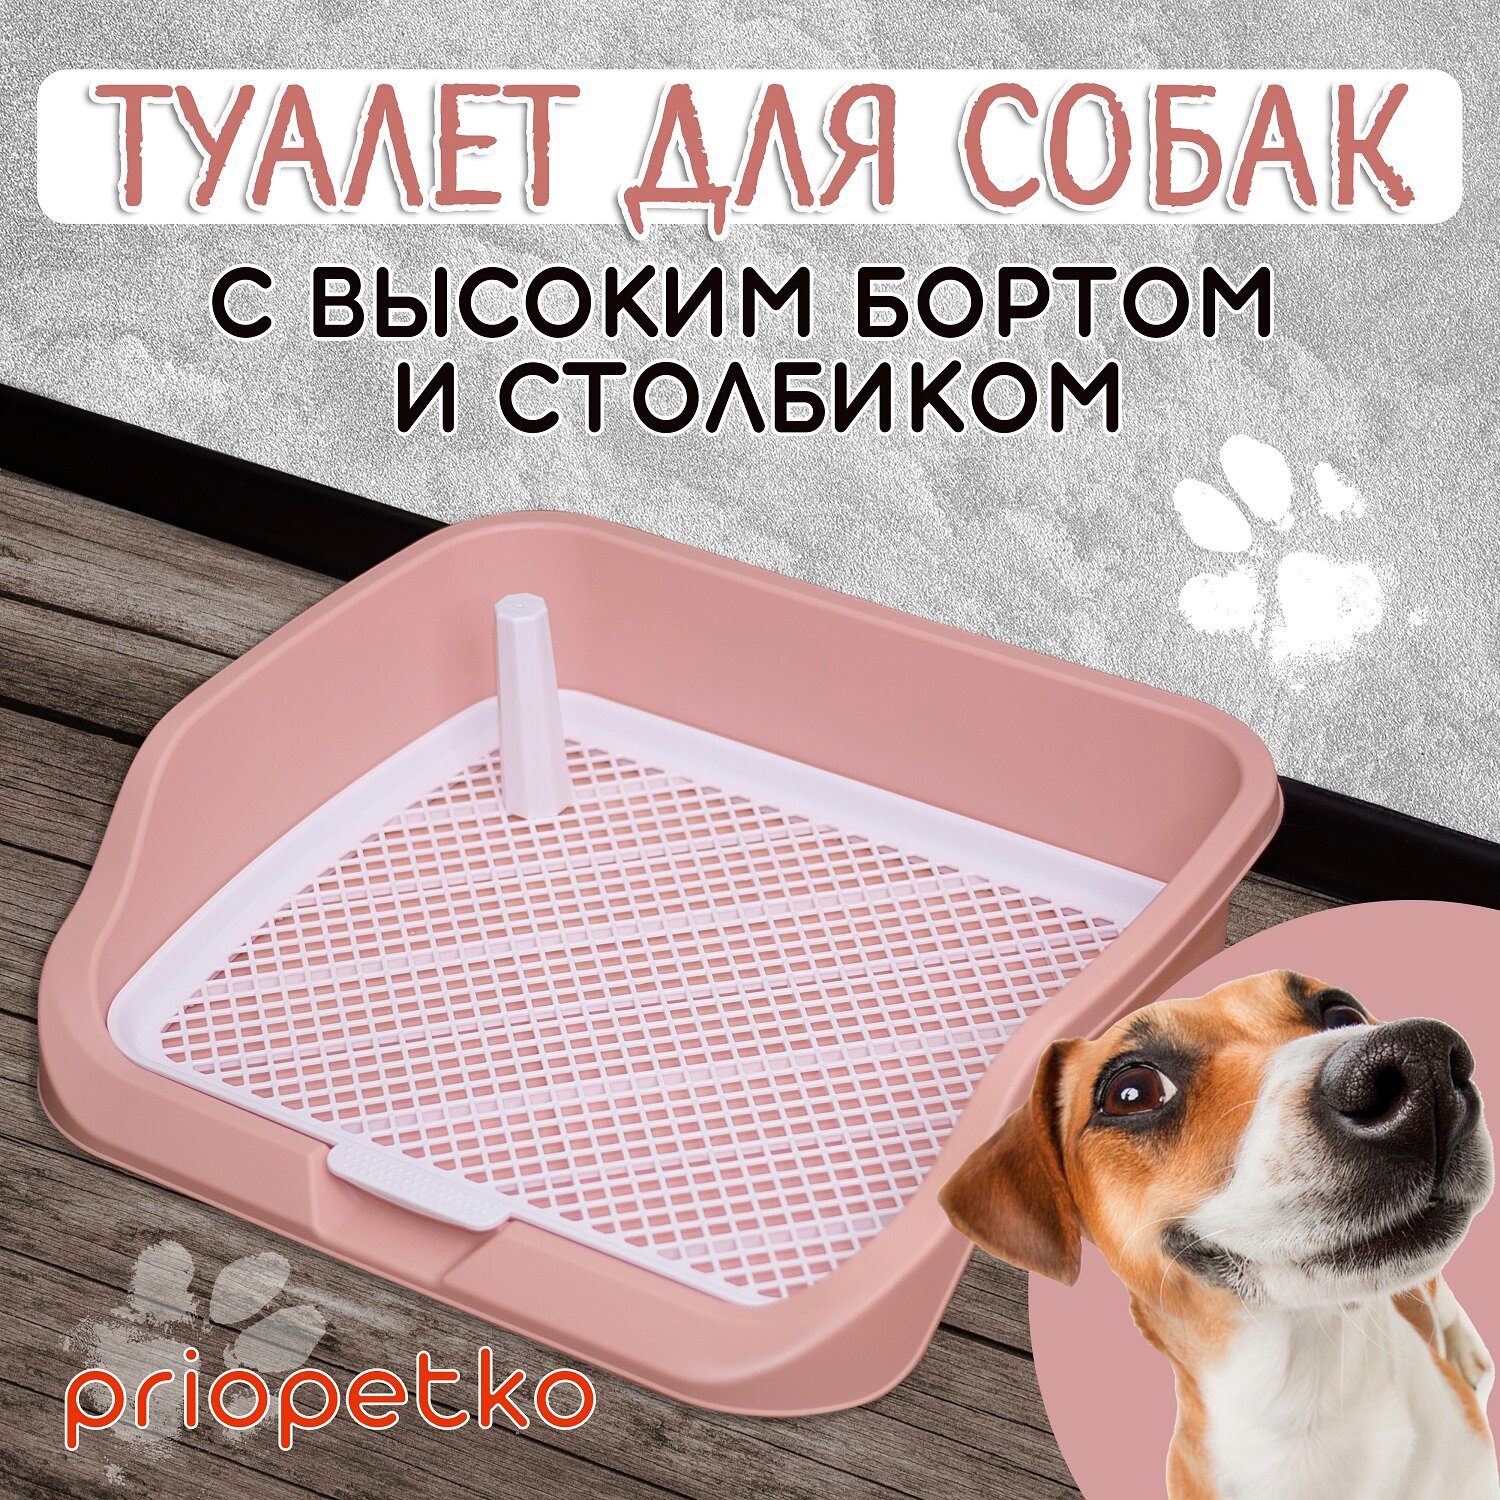 Туалет для собак с бортиком 53х45х13 см (розовый), Priopetko. Серия "Maxim"